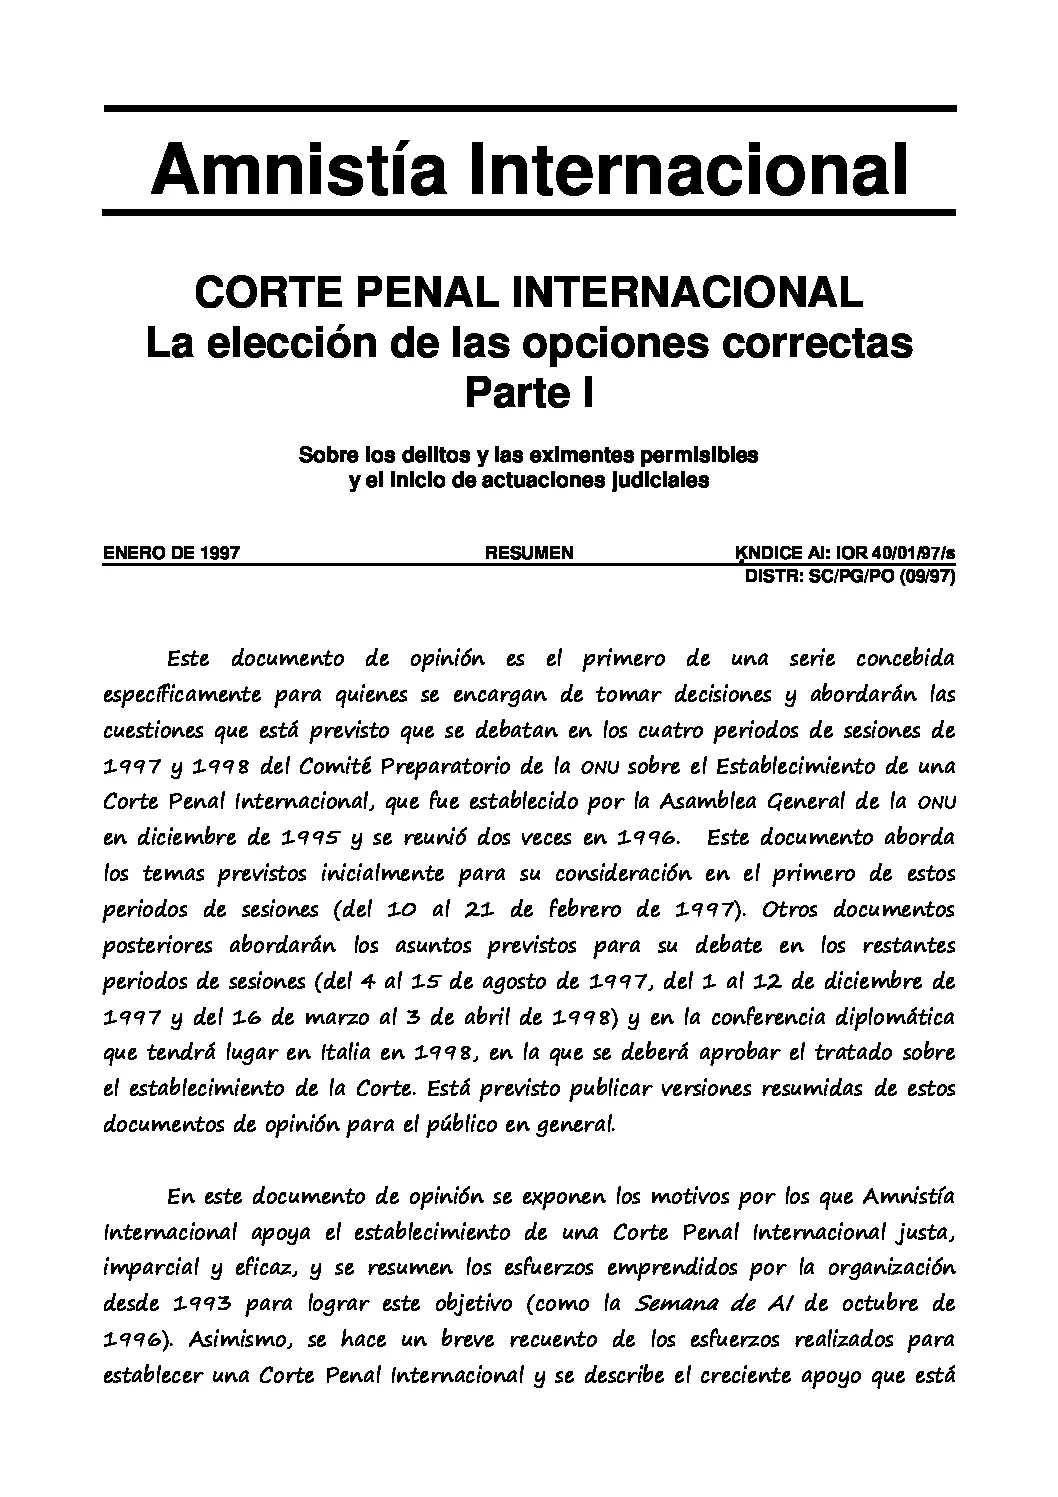 corte penal internacional resumen - Quién forma la Corte Penal Internacional